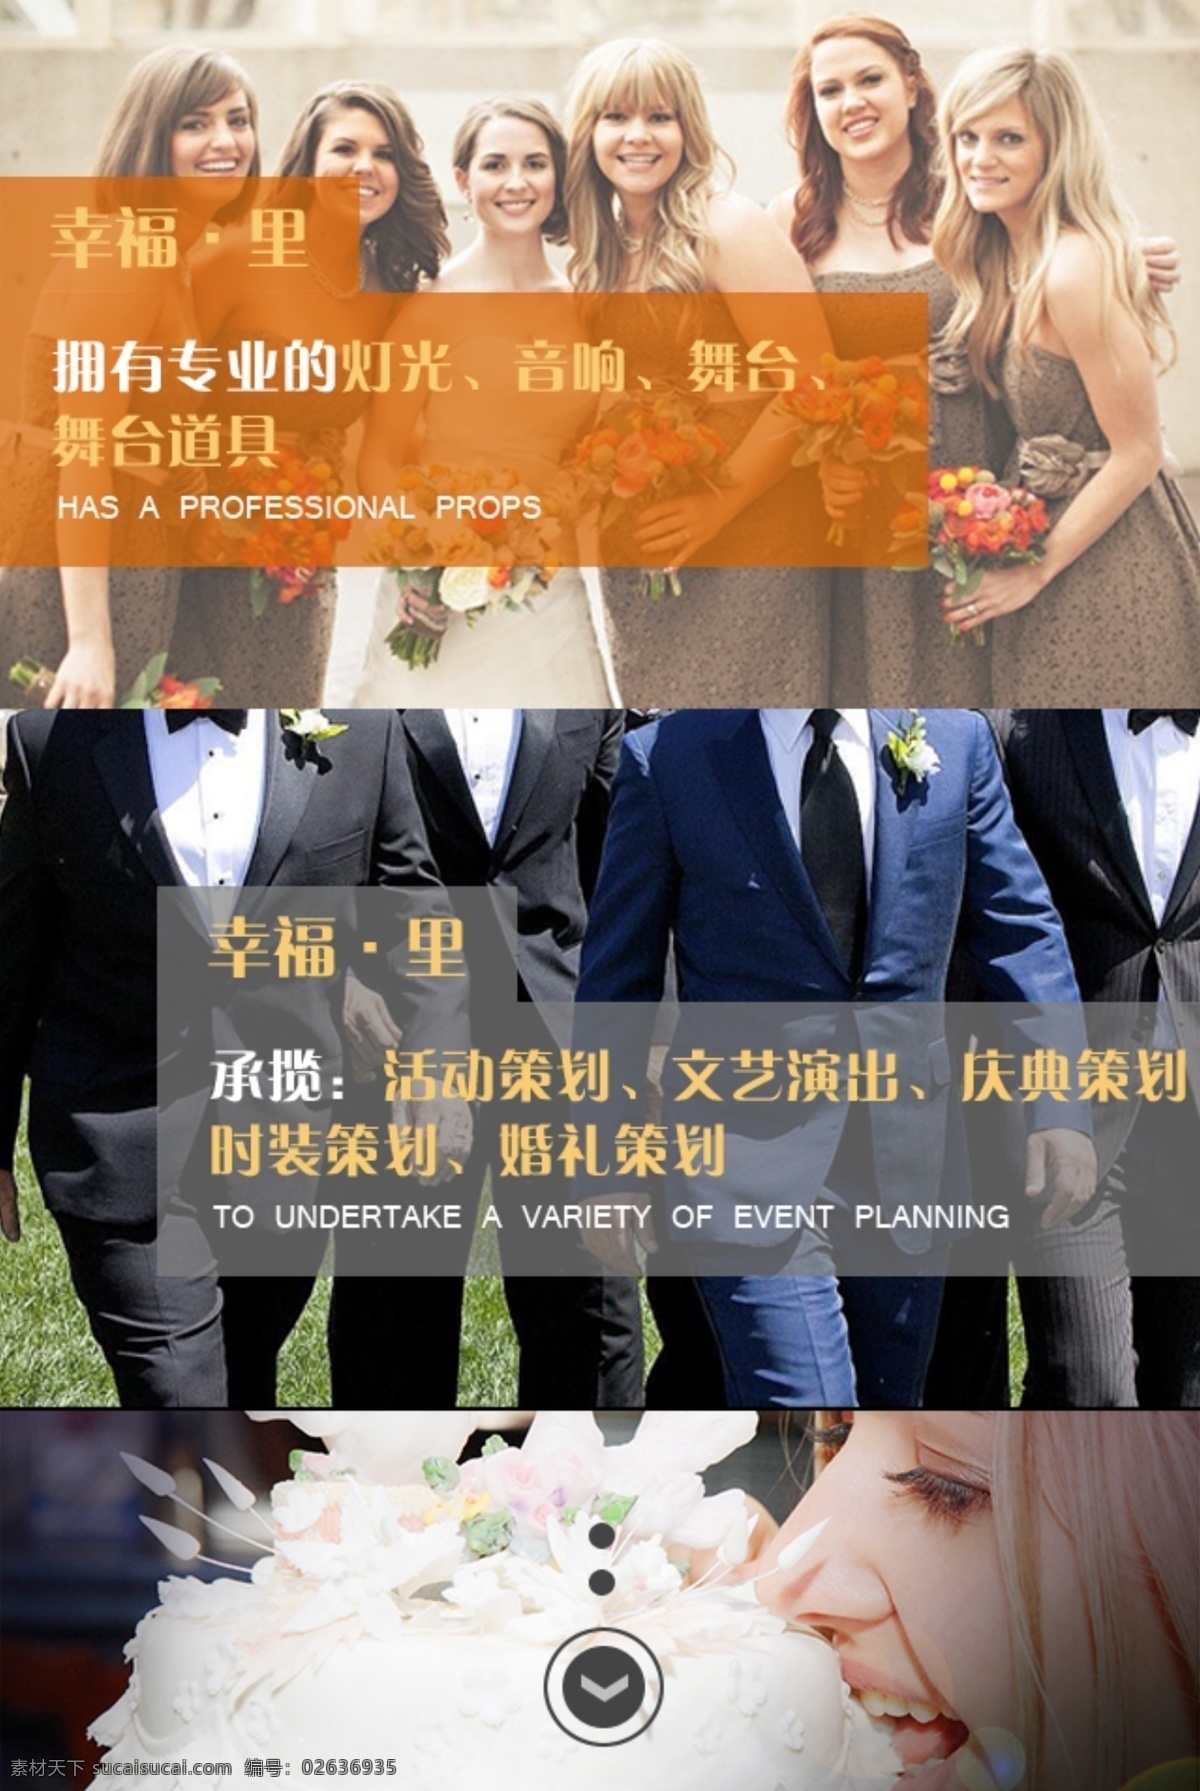 婚礼策划网站 婚礼策划 网站模板 网站图片